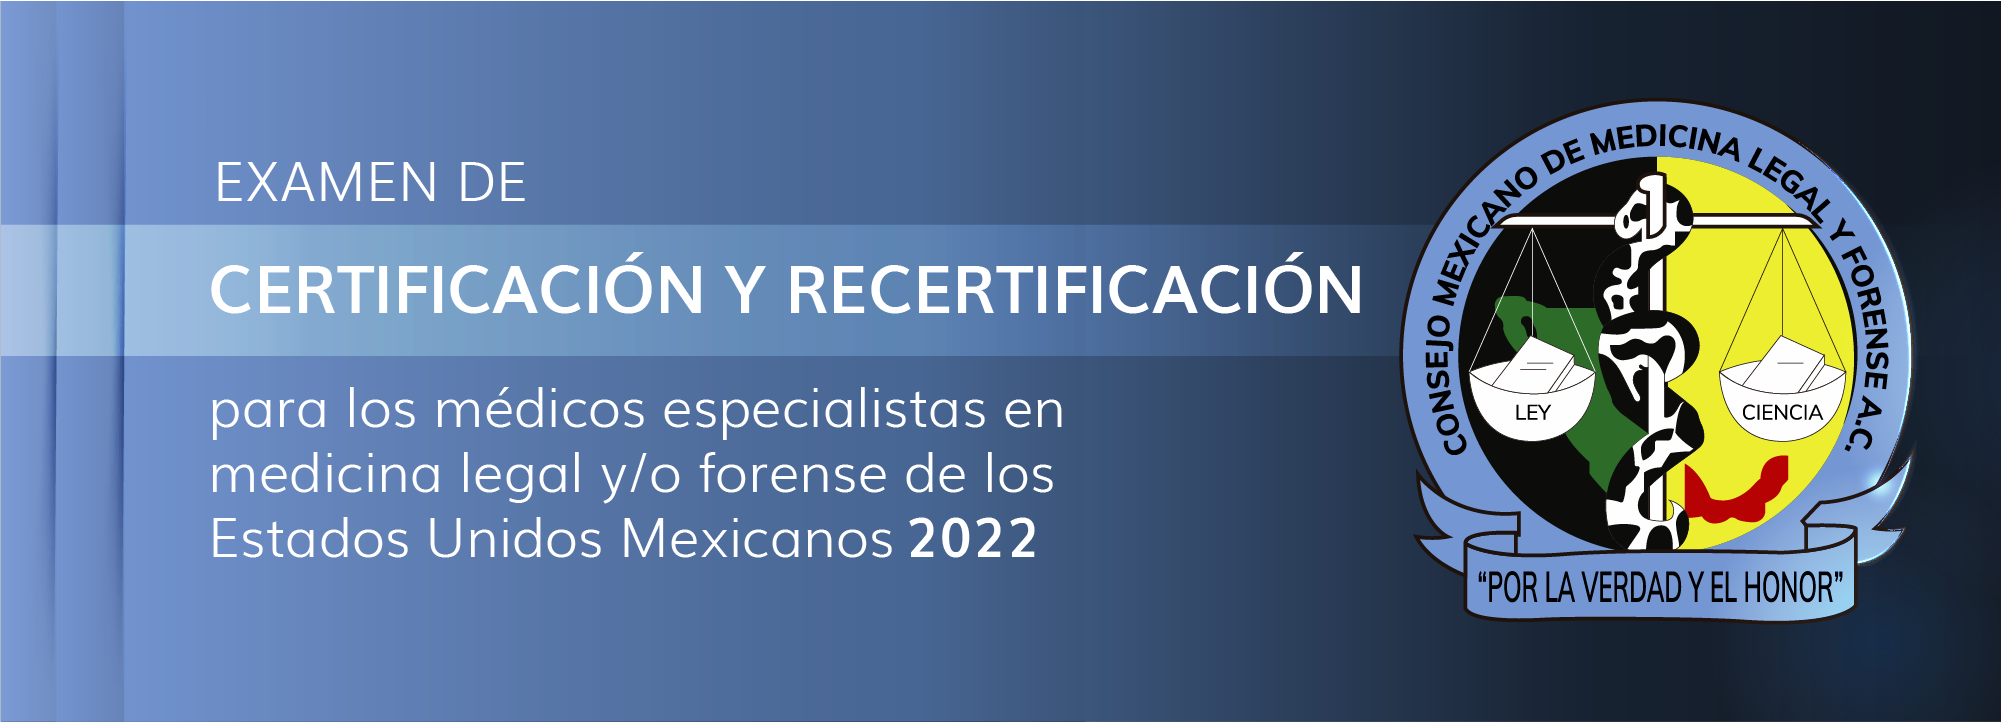 Examen de certificación y recertificación - Septiembre 2022 MedLegForenses-0001